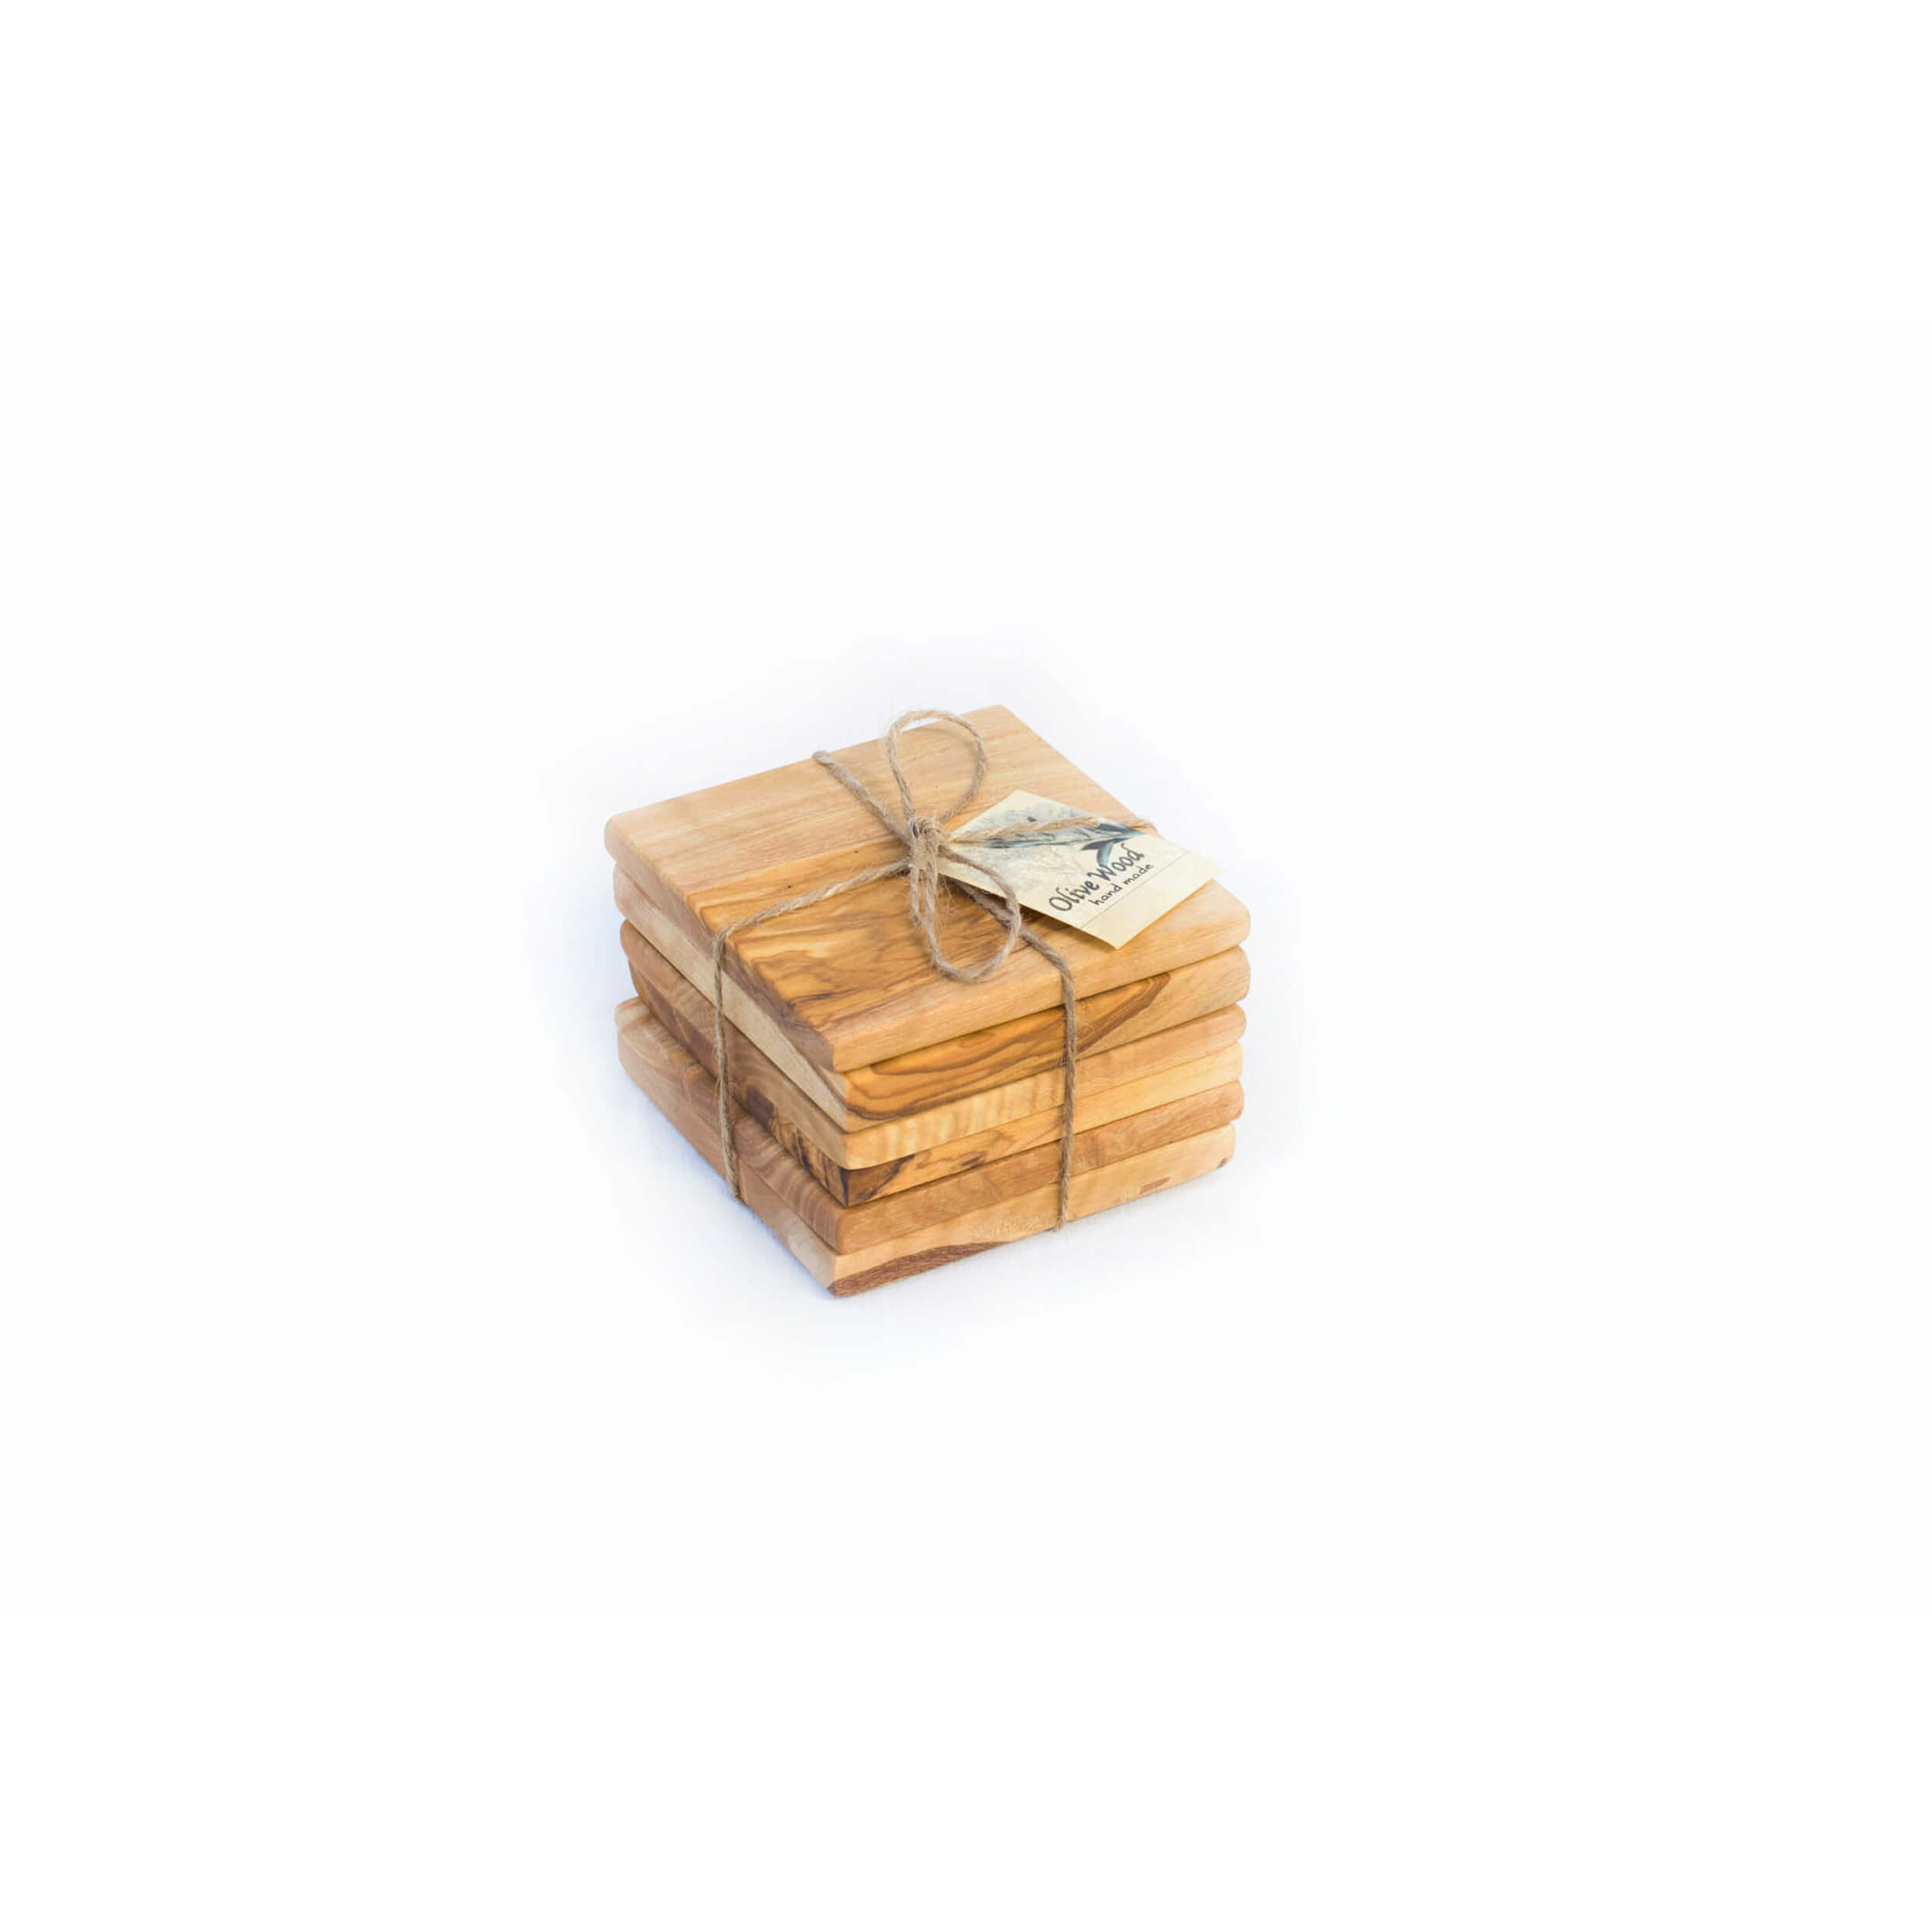 Σουβέρ Τετράγωνο 'Mavridis Wooden Products' 370gr